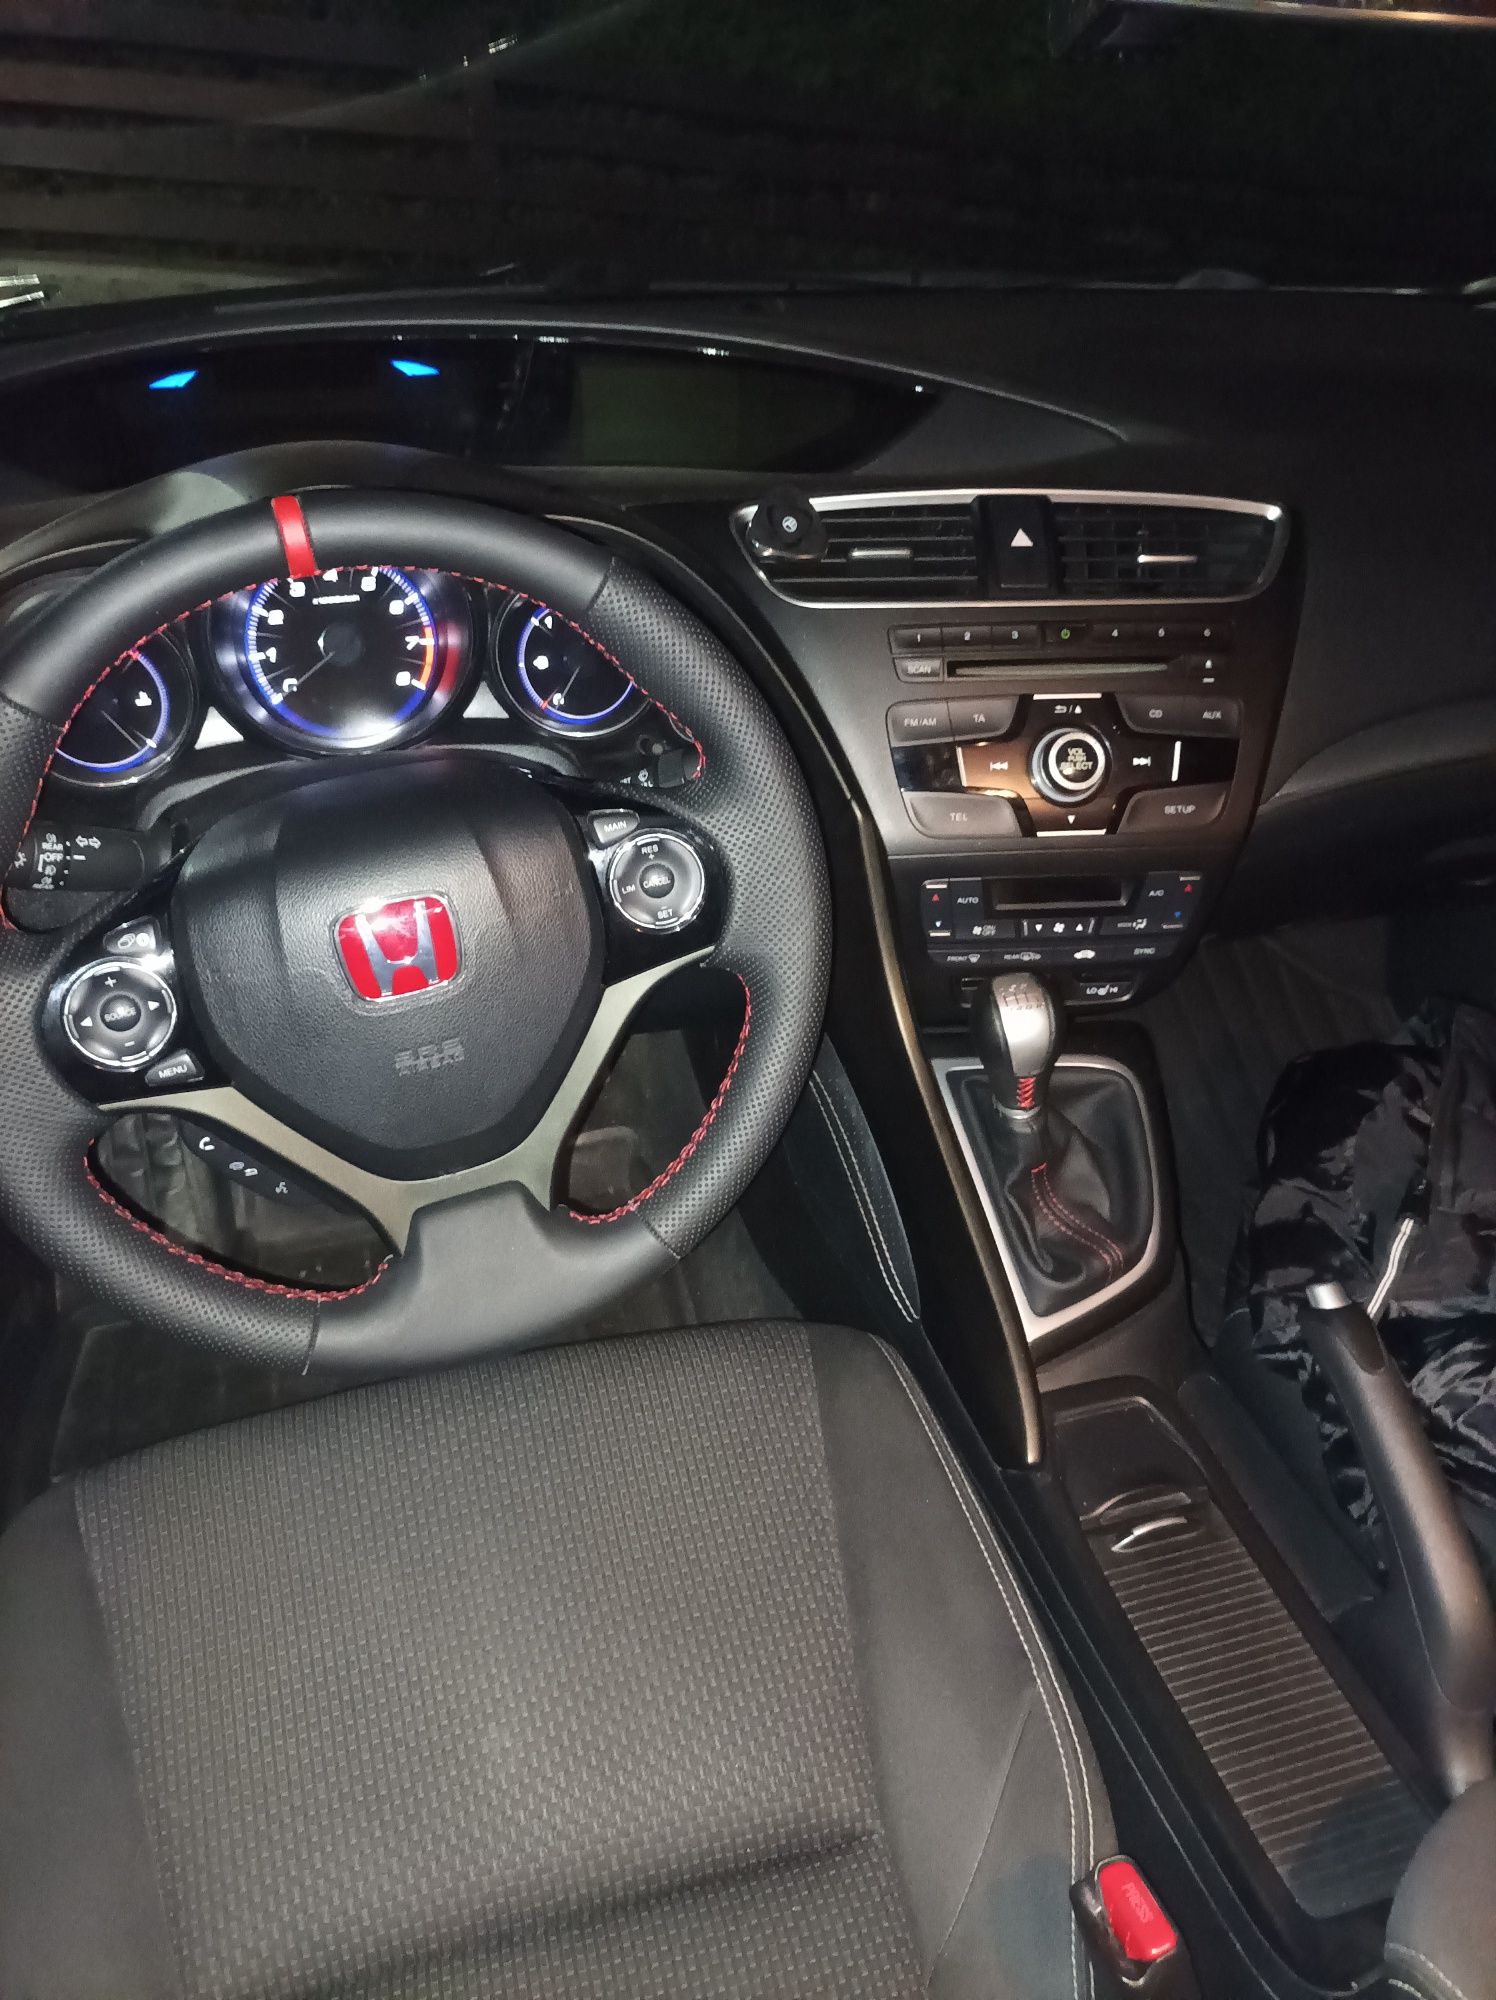 Honda Civic 1.8 - 2015